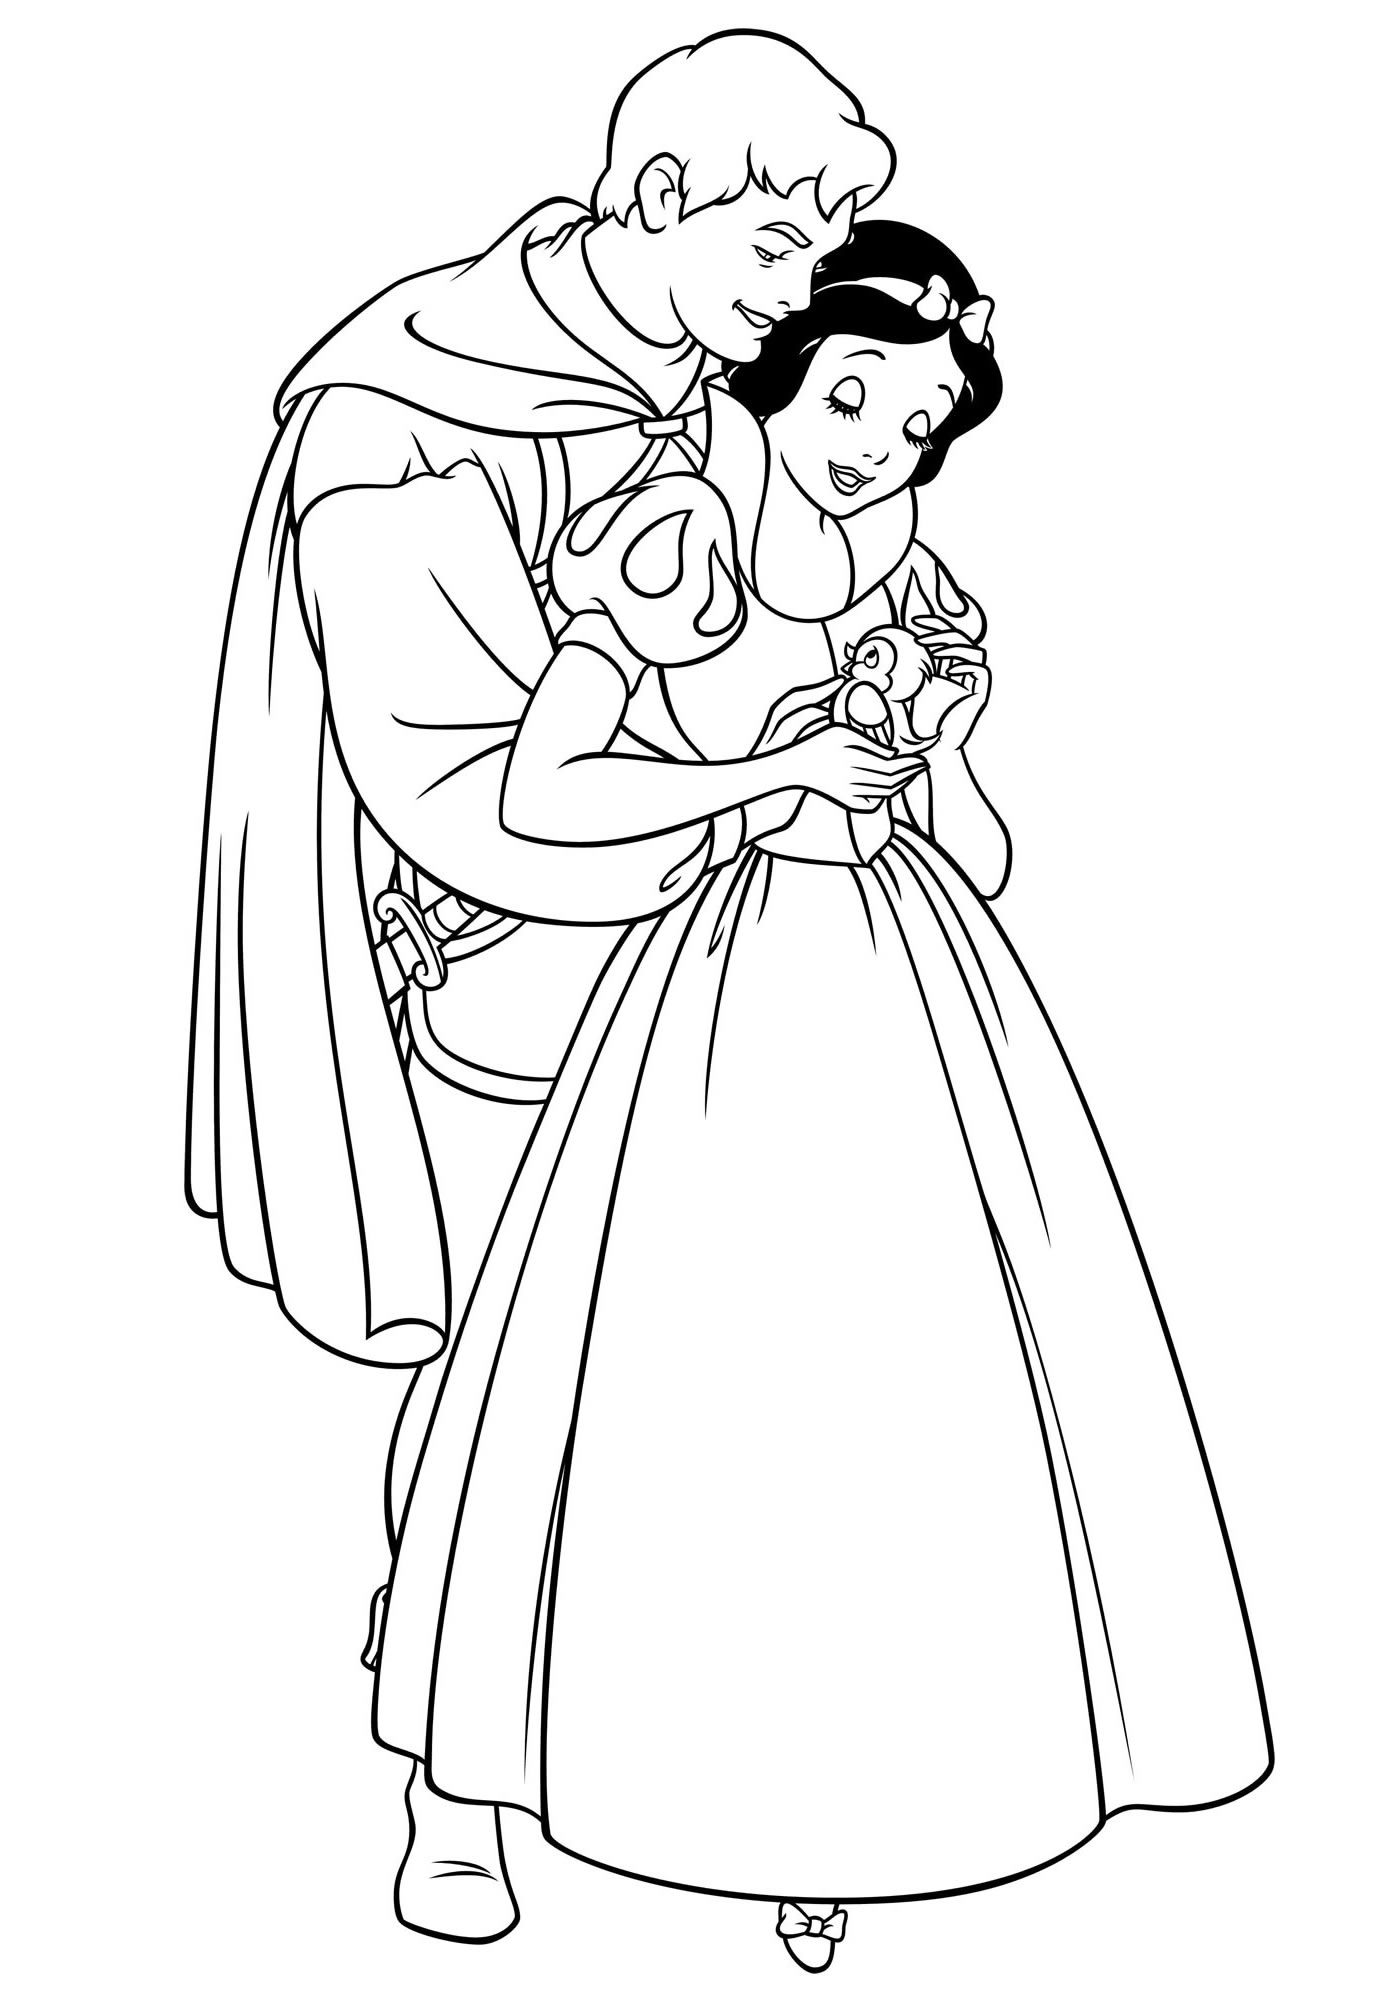 Принц и Белоснежка раскраска для детей